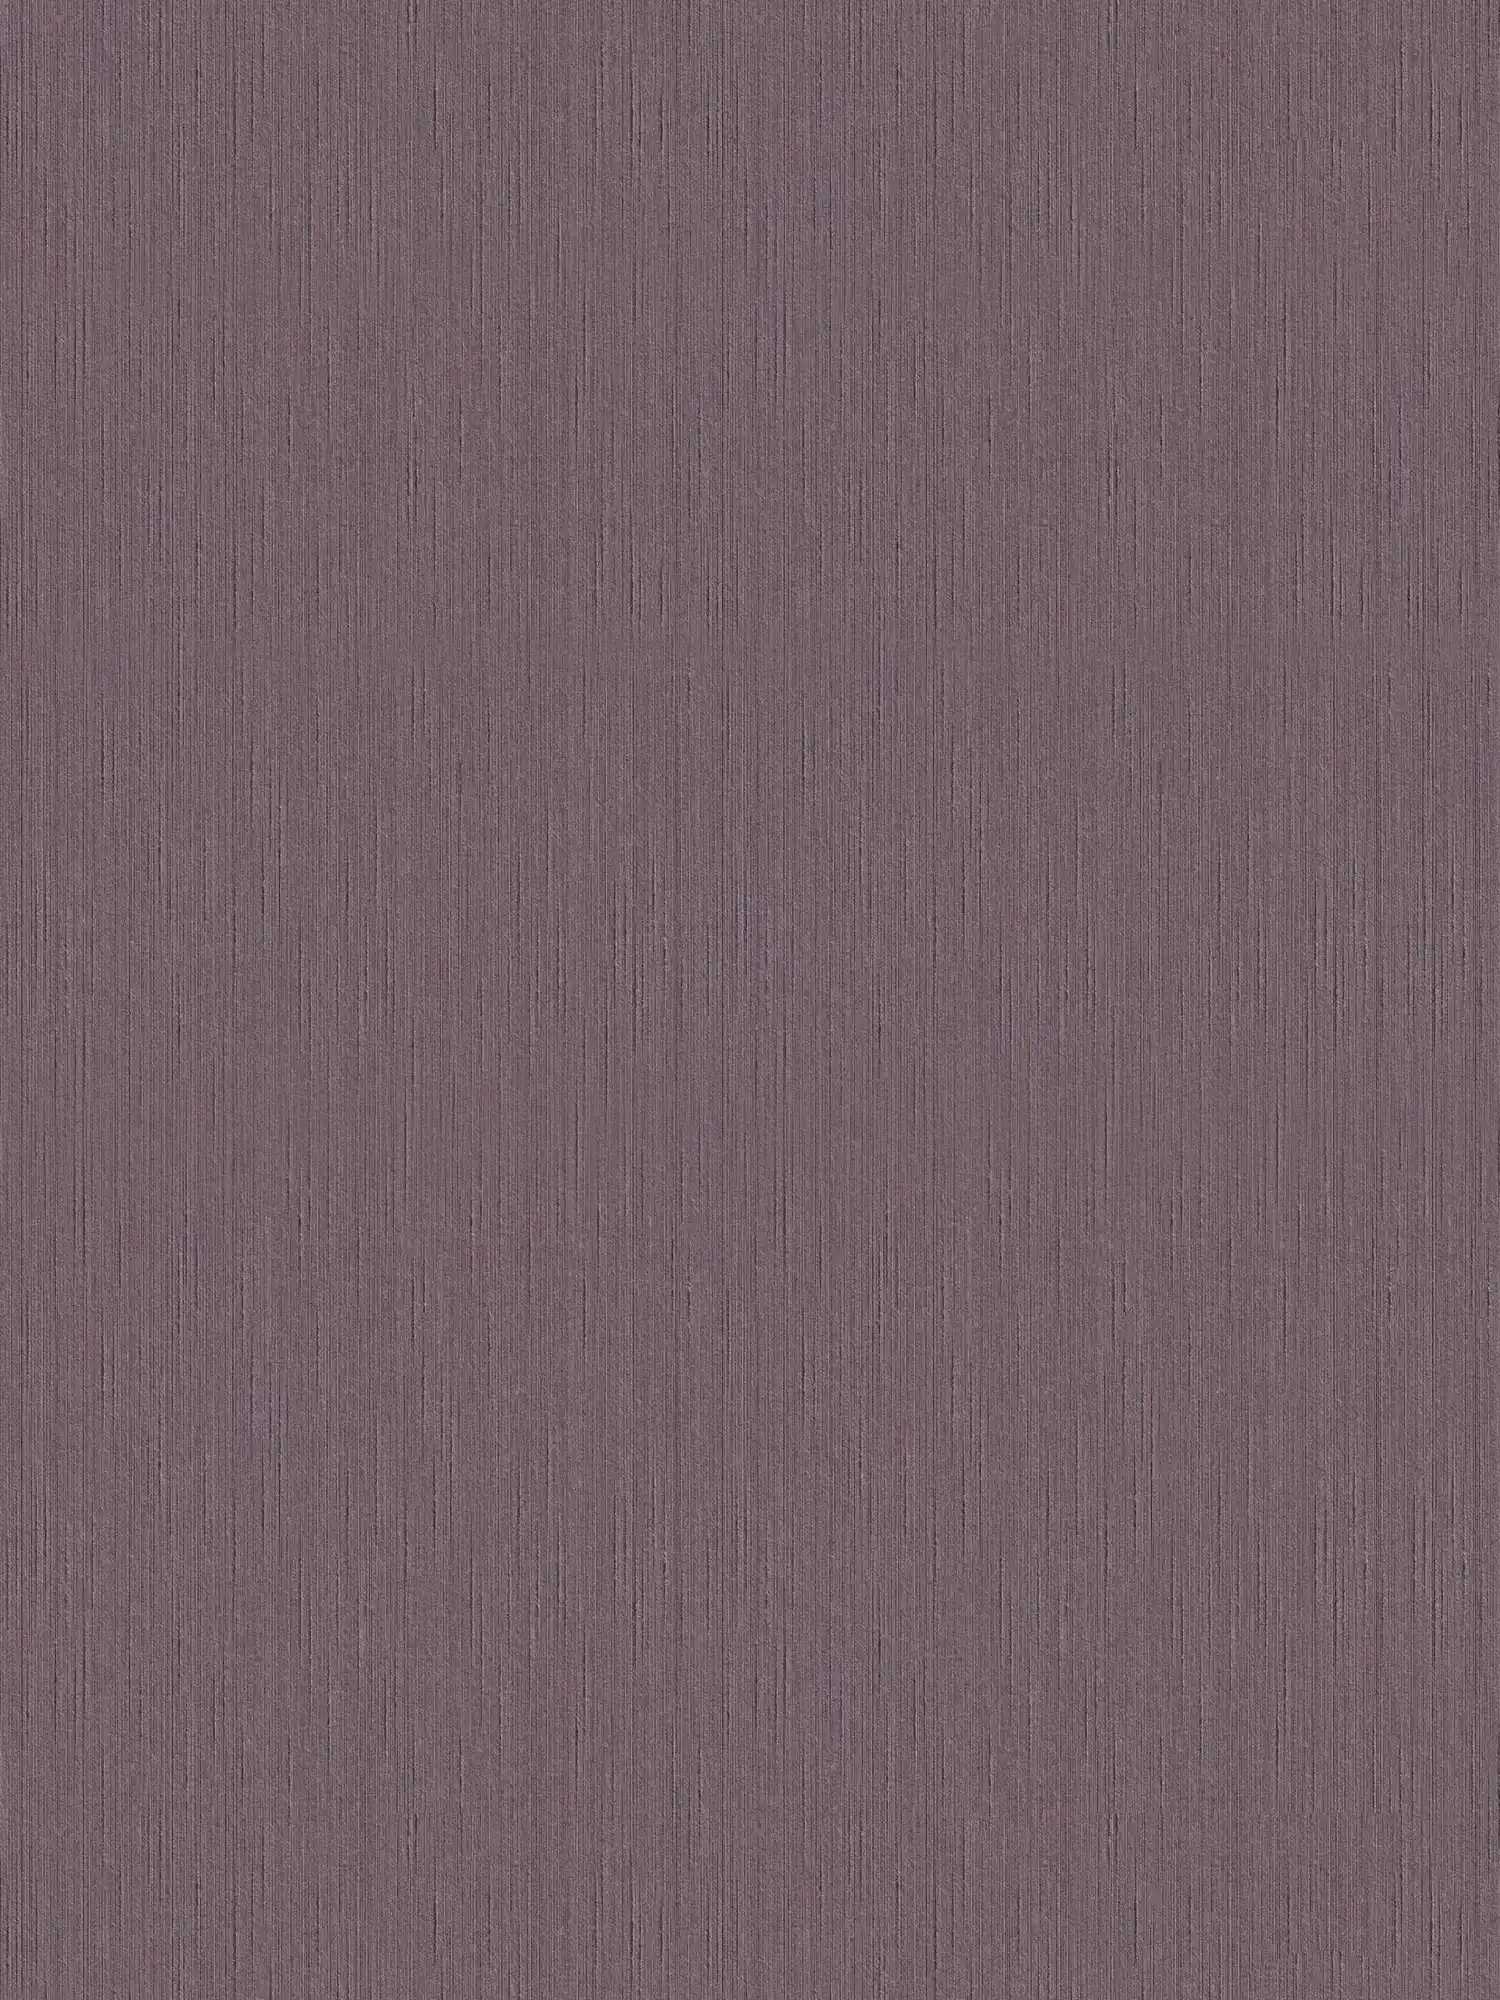 Behang donker mauve met natuurlijke structuur - paars, violet
